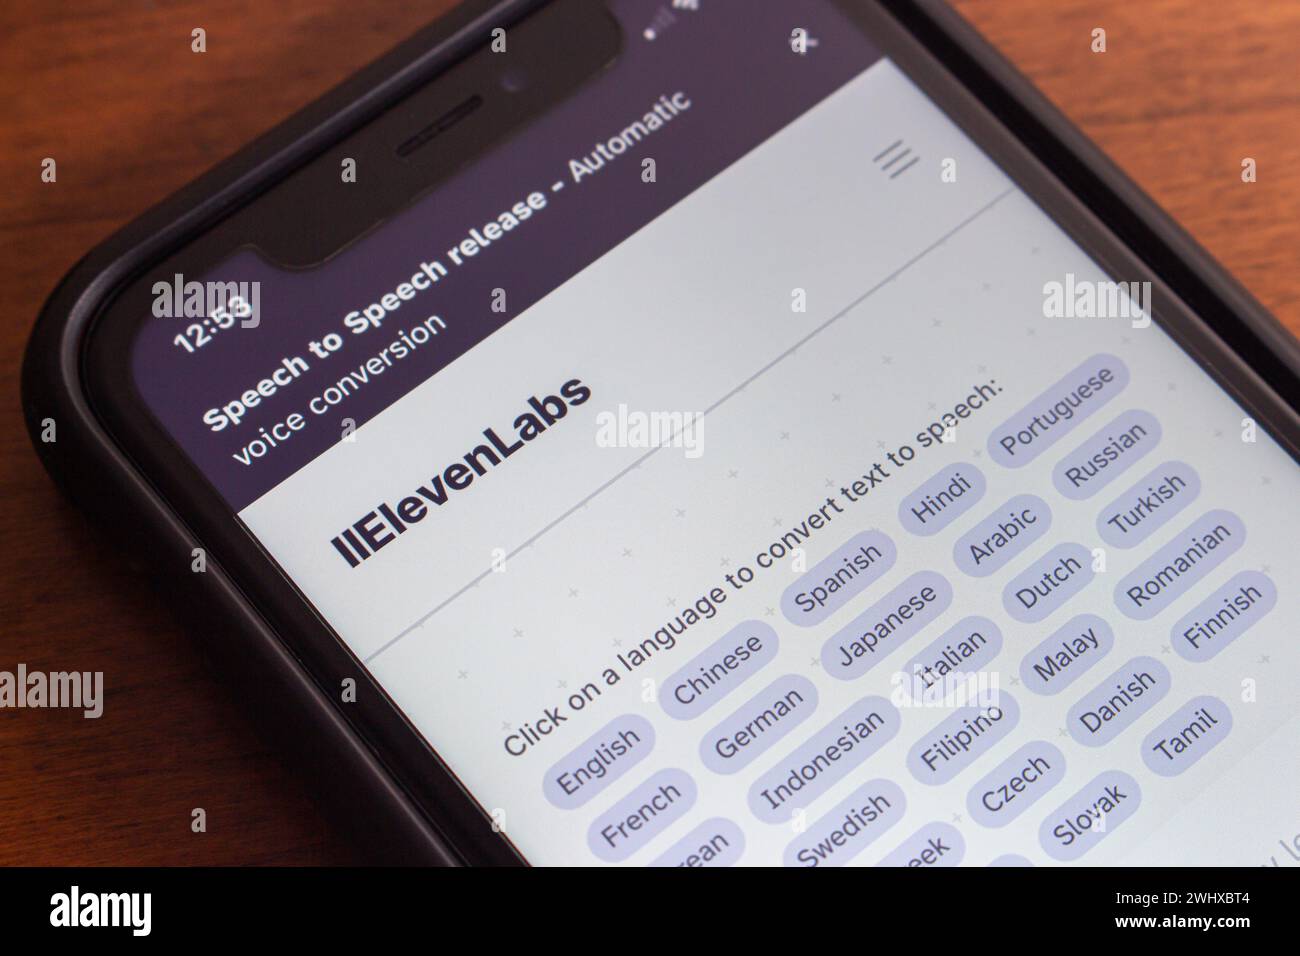 Website von ElevenLabs auf dem iPhone. ElevenLabs ist ein Technologieunternehmen, das sich auf die Entwicklung von Sprachsynthese und Text-to-Speech-Software mit KI spezialisiert hat Stockfoto